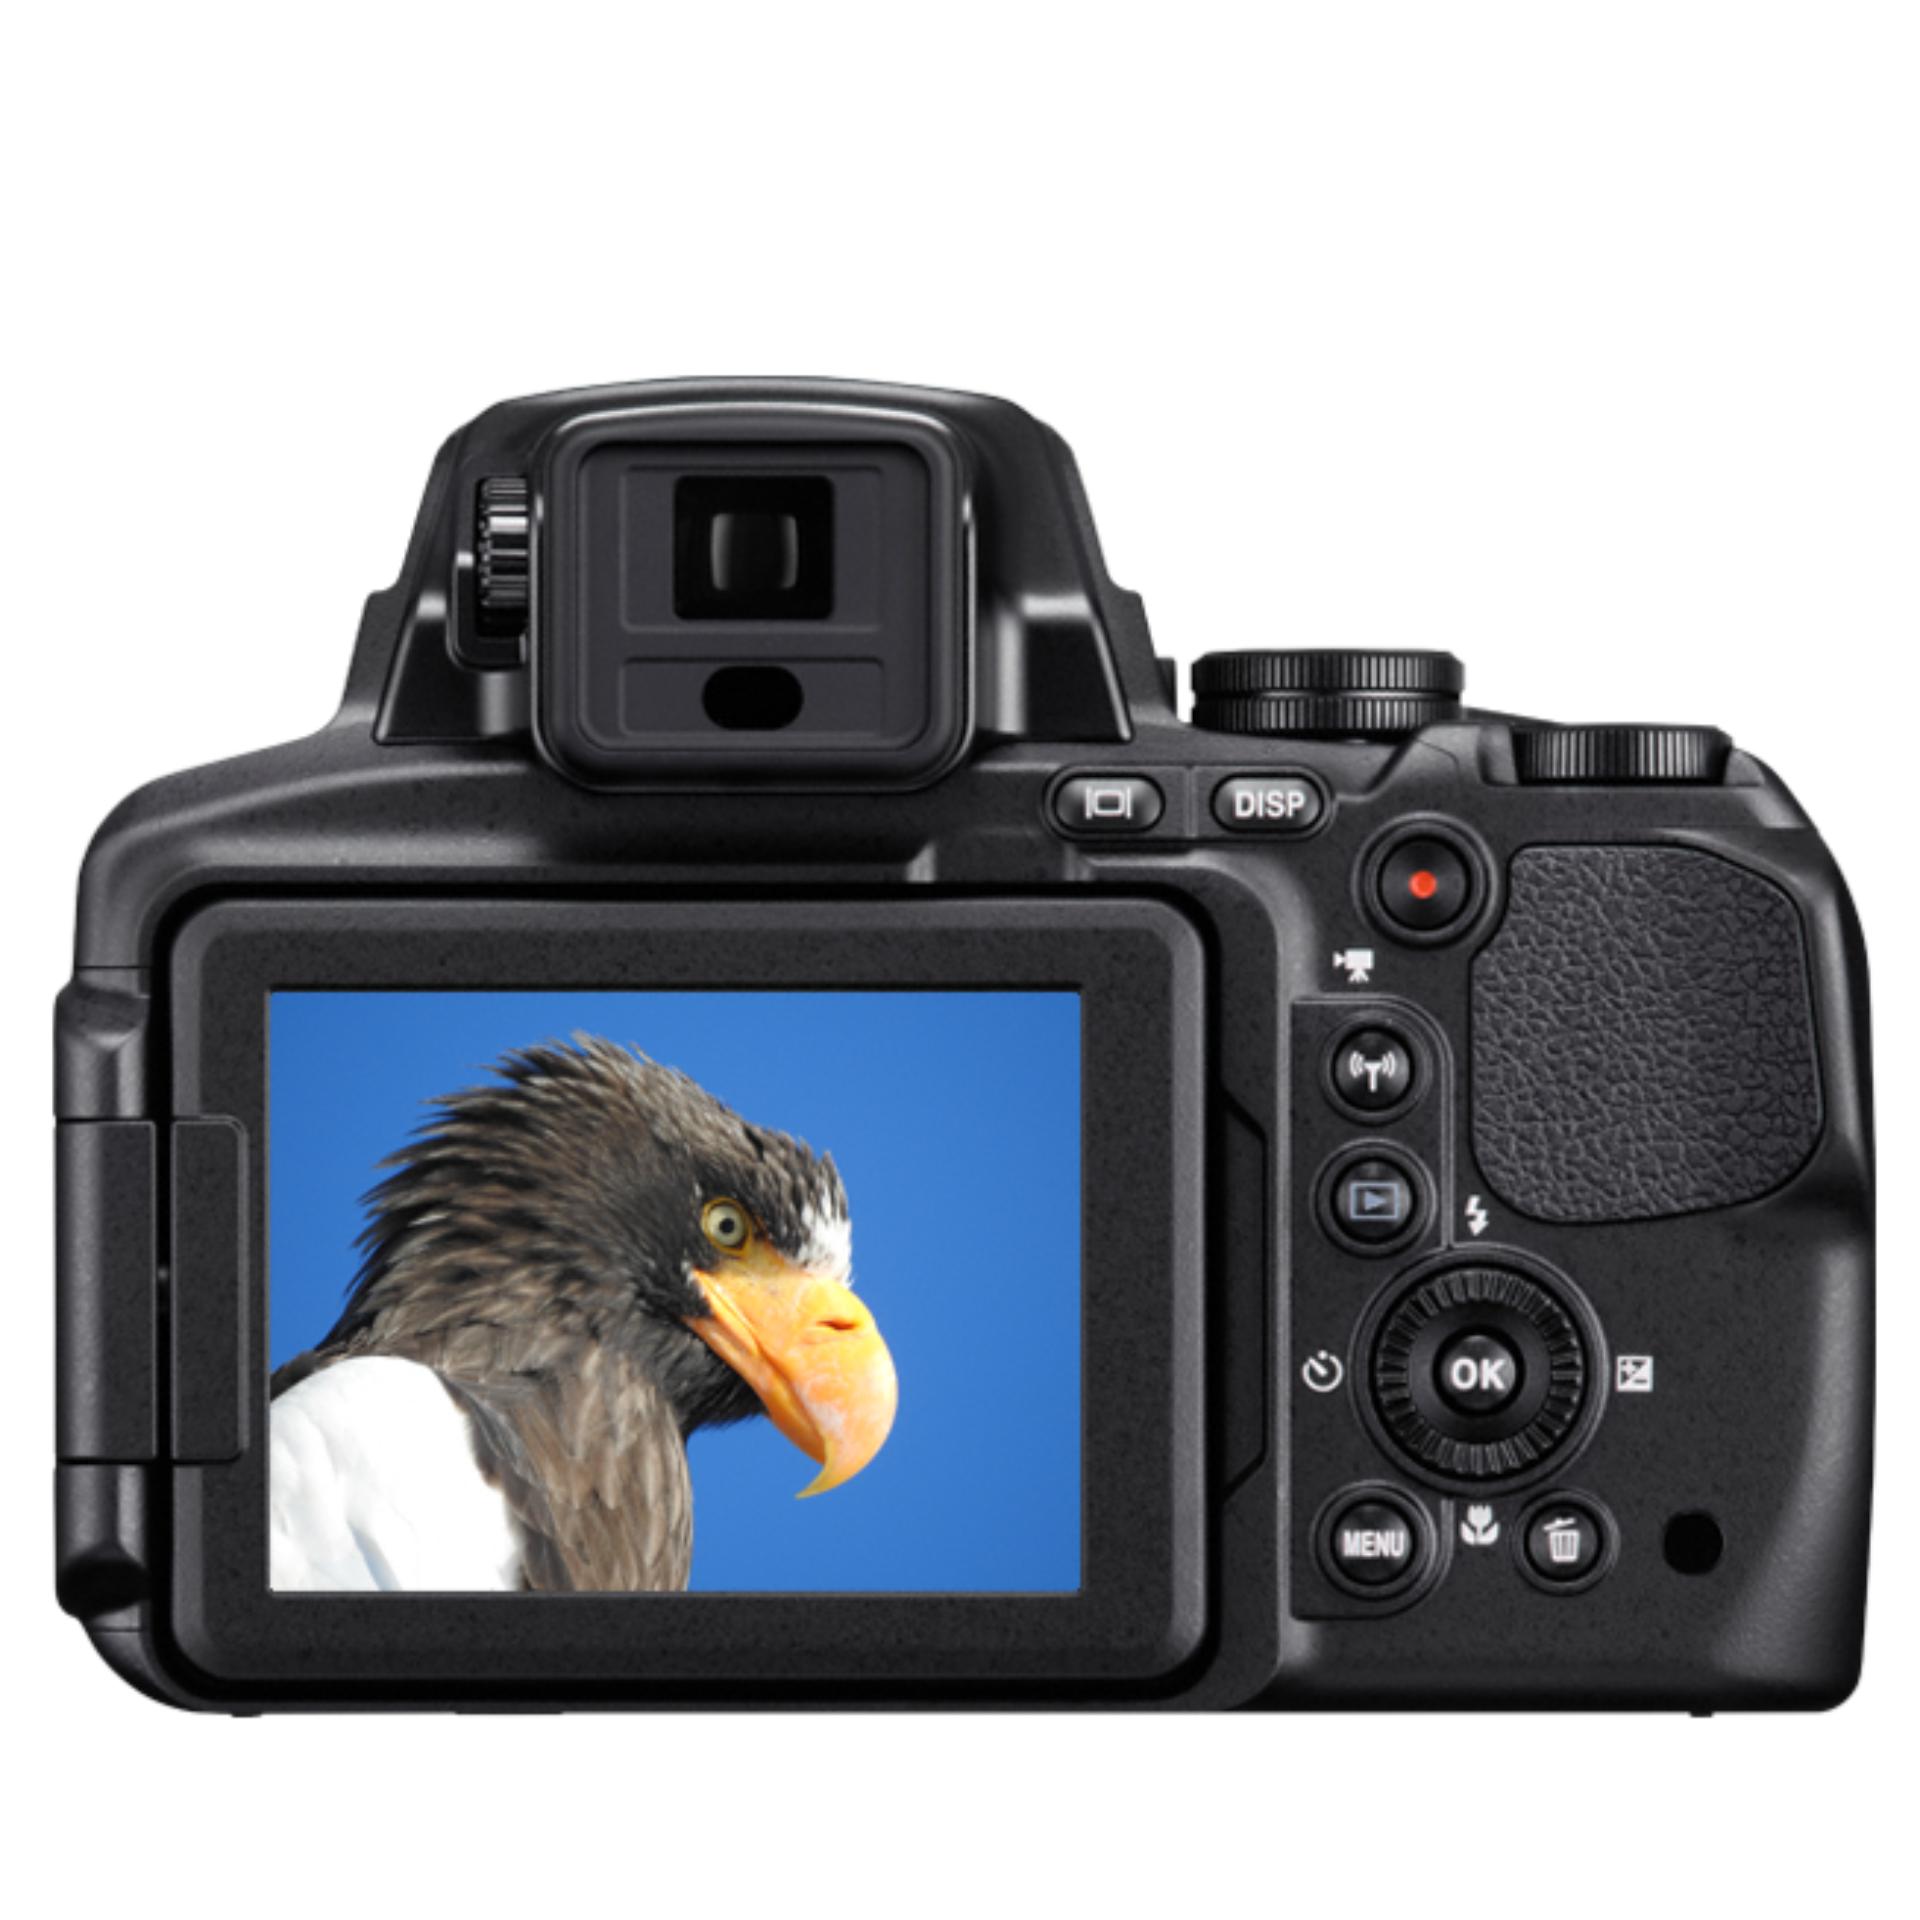 Nikon Coolpix P900 (Black)